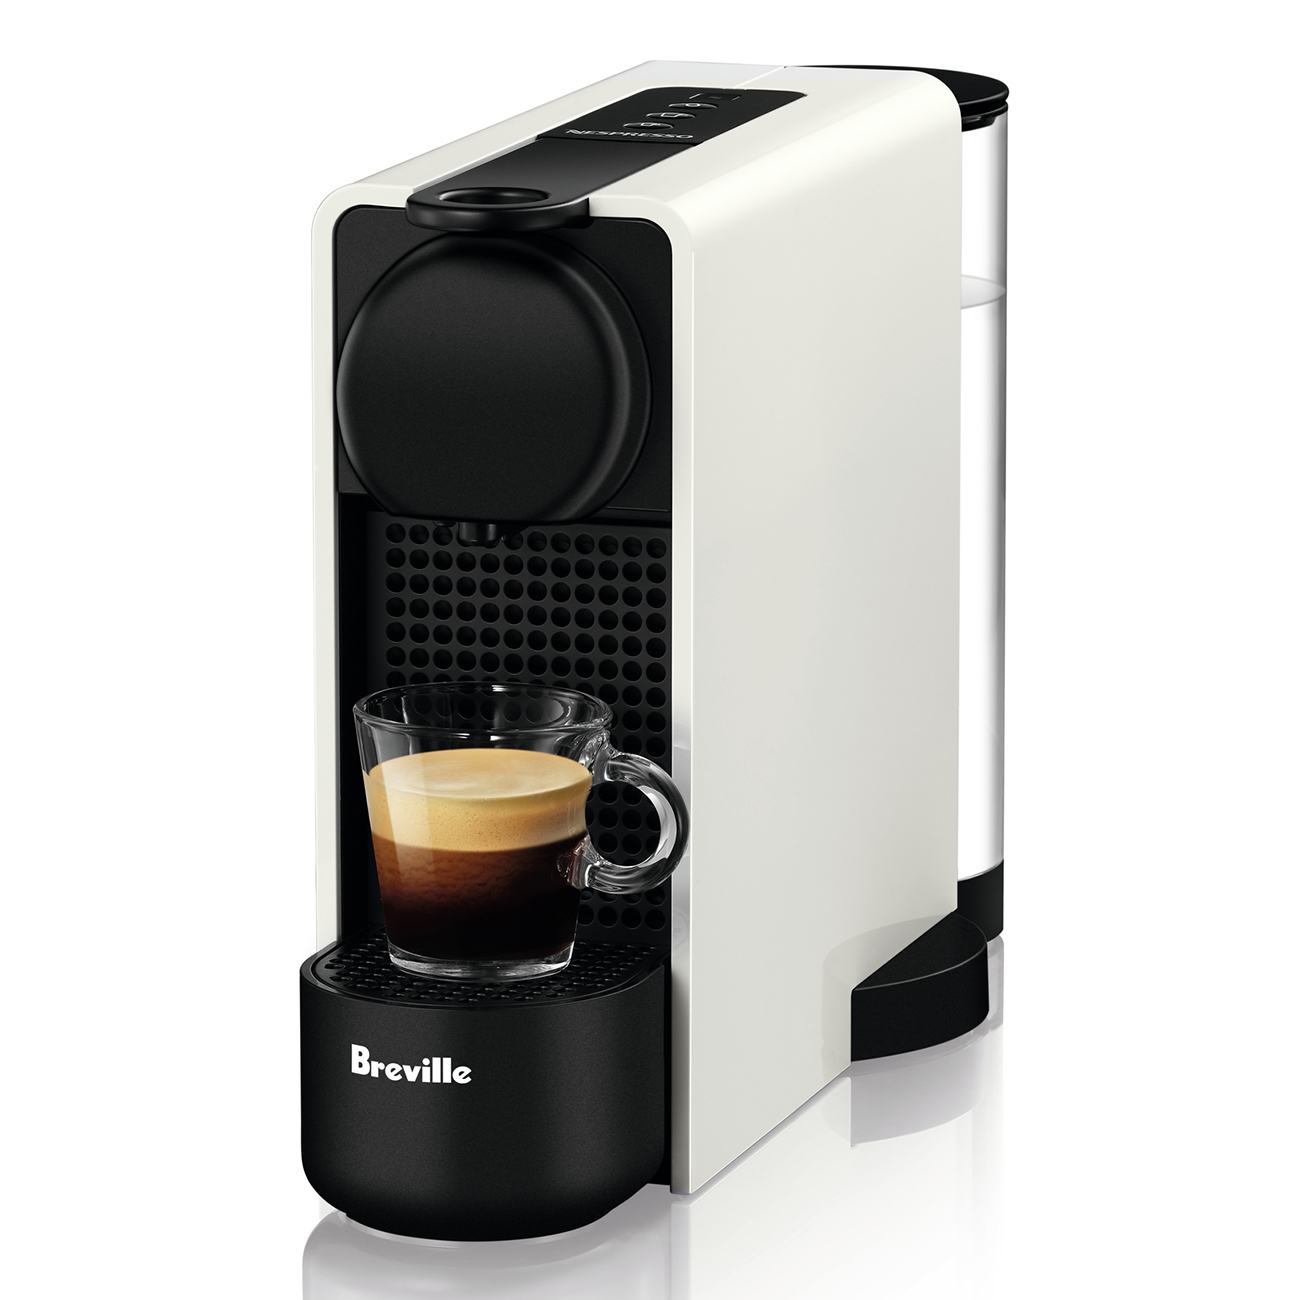  Essenza  Plus Nespresso Machine  Breville